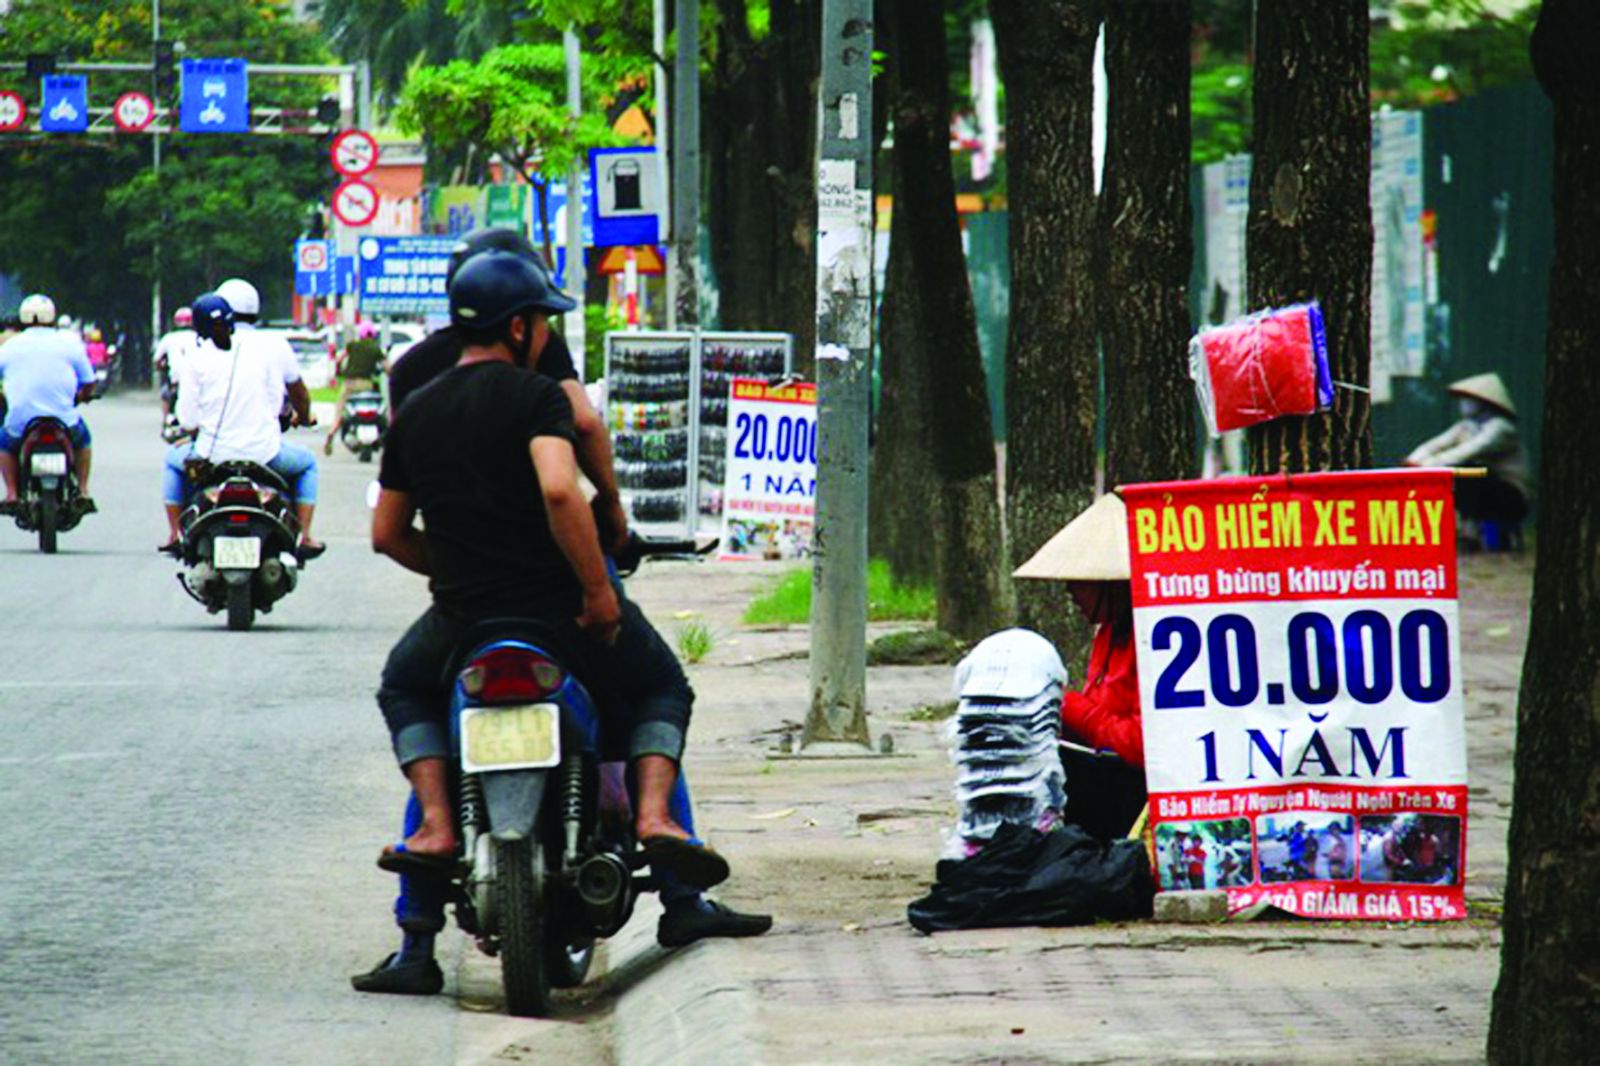 Cơ quan quản lý Nhà nước nên thực hiện cả trách nhiệm giám sát bồi thường cho người mua bảo hiểm. Bảo hiểm xe máy bán với giá rẻ tại Hà Nội - Ảnh: Thành Nguyễn